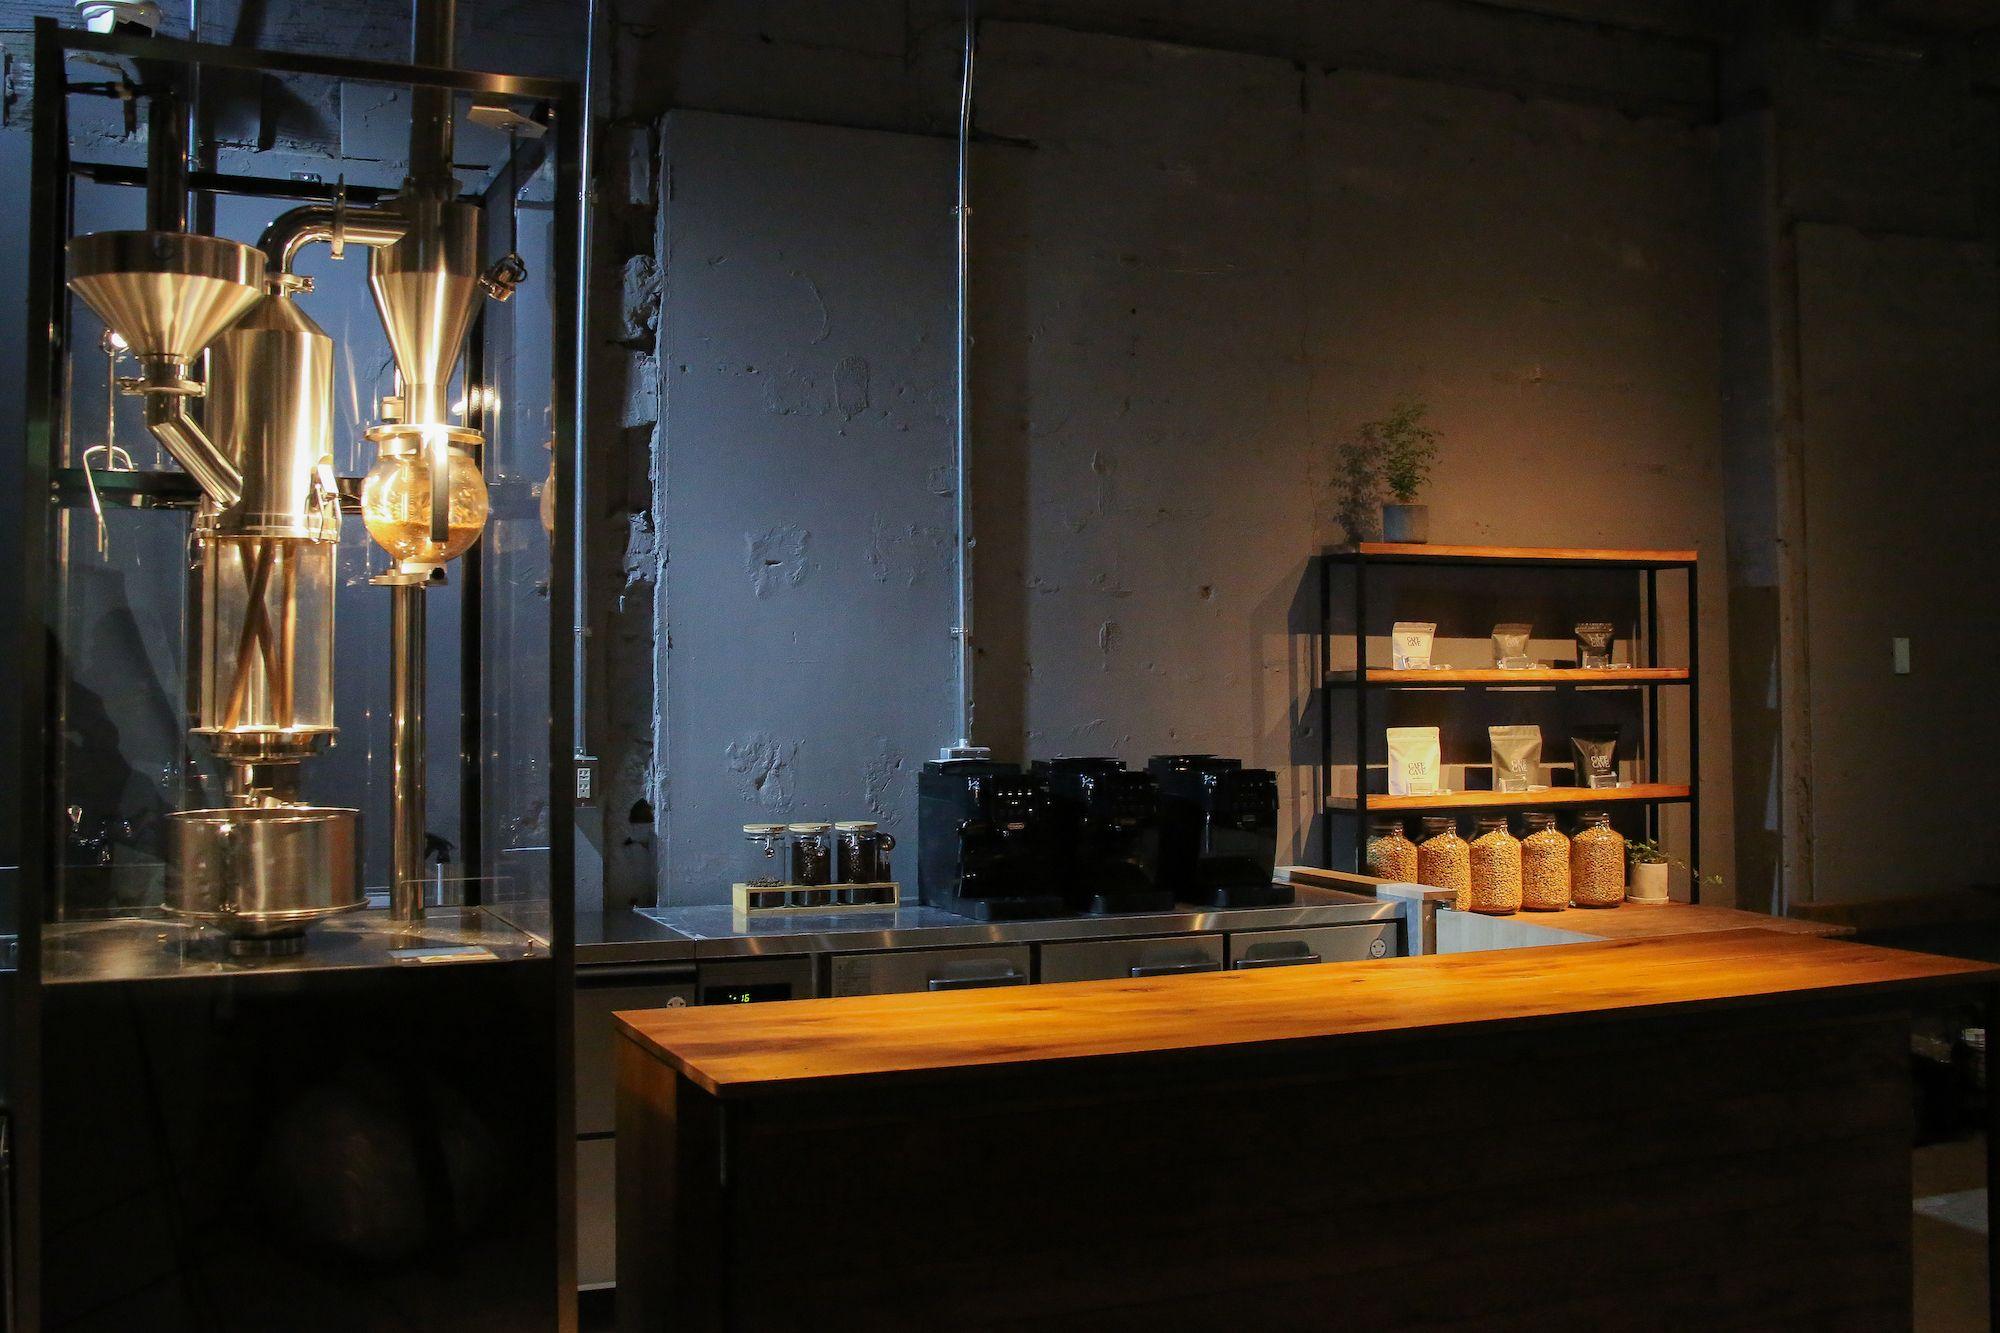 【アッシュ・ペー・フランス株式会社】新たにカフェ事業をスタート。こだわりのコーヒー、ジュエリー、アートが楽しめる複合空間「カフェ ケイブ」を表参道にオープン。